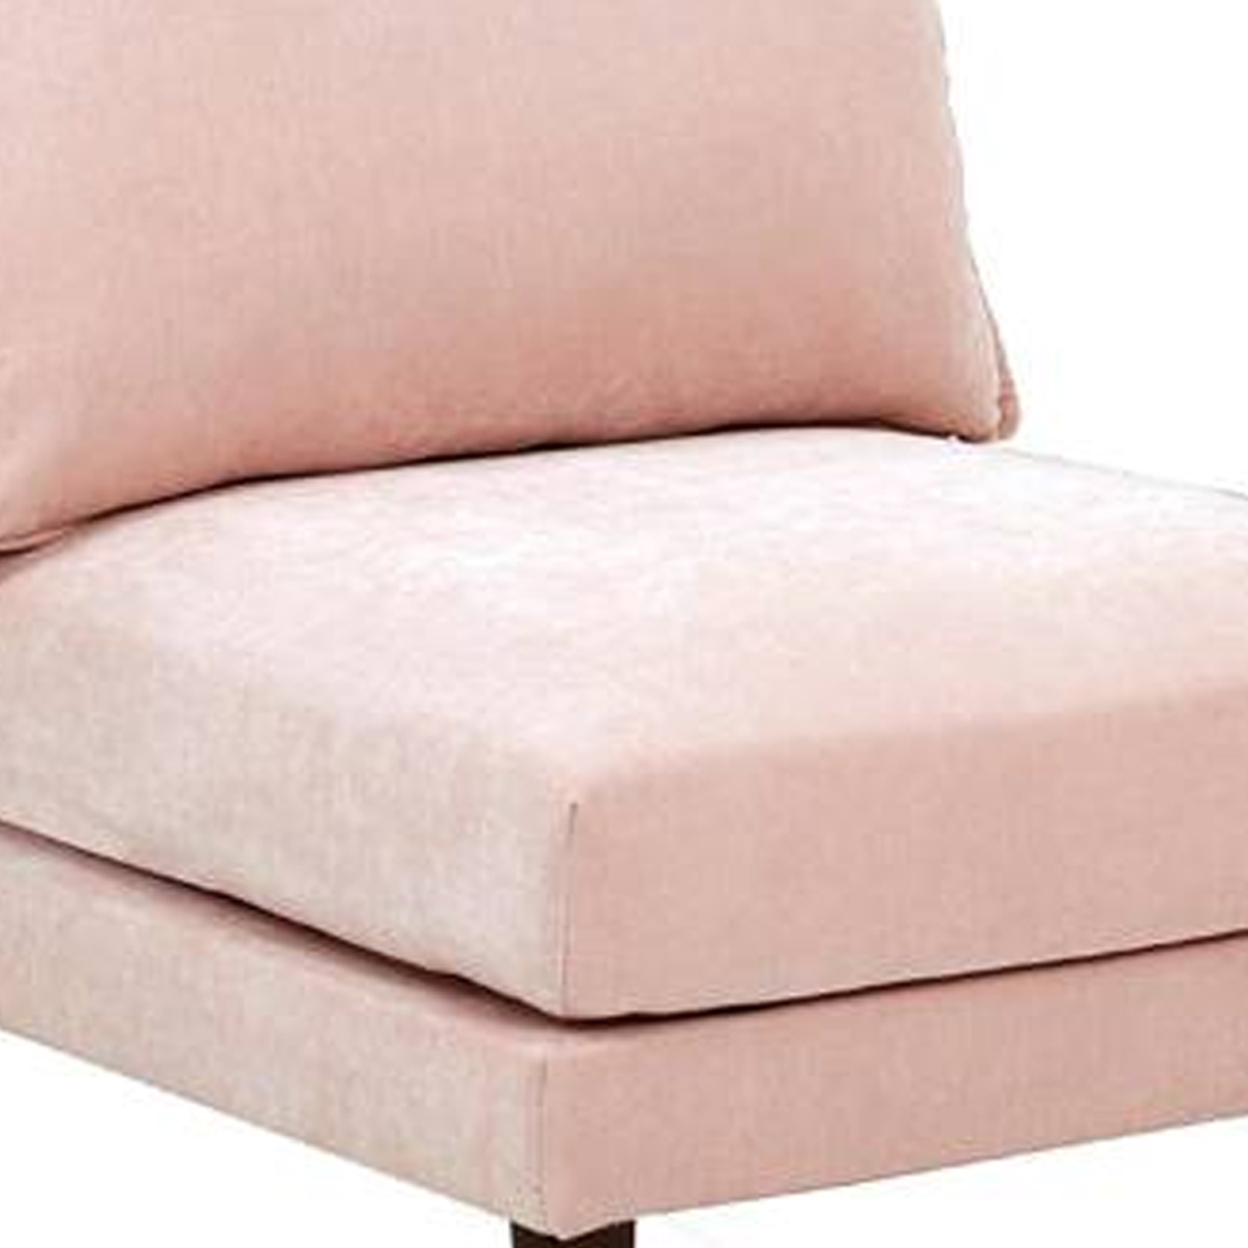 Rio 33 Inch Modular Armless Sofa Chair, Lumbar Cushion, Blush Pink- Saltoro Sherpi